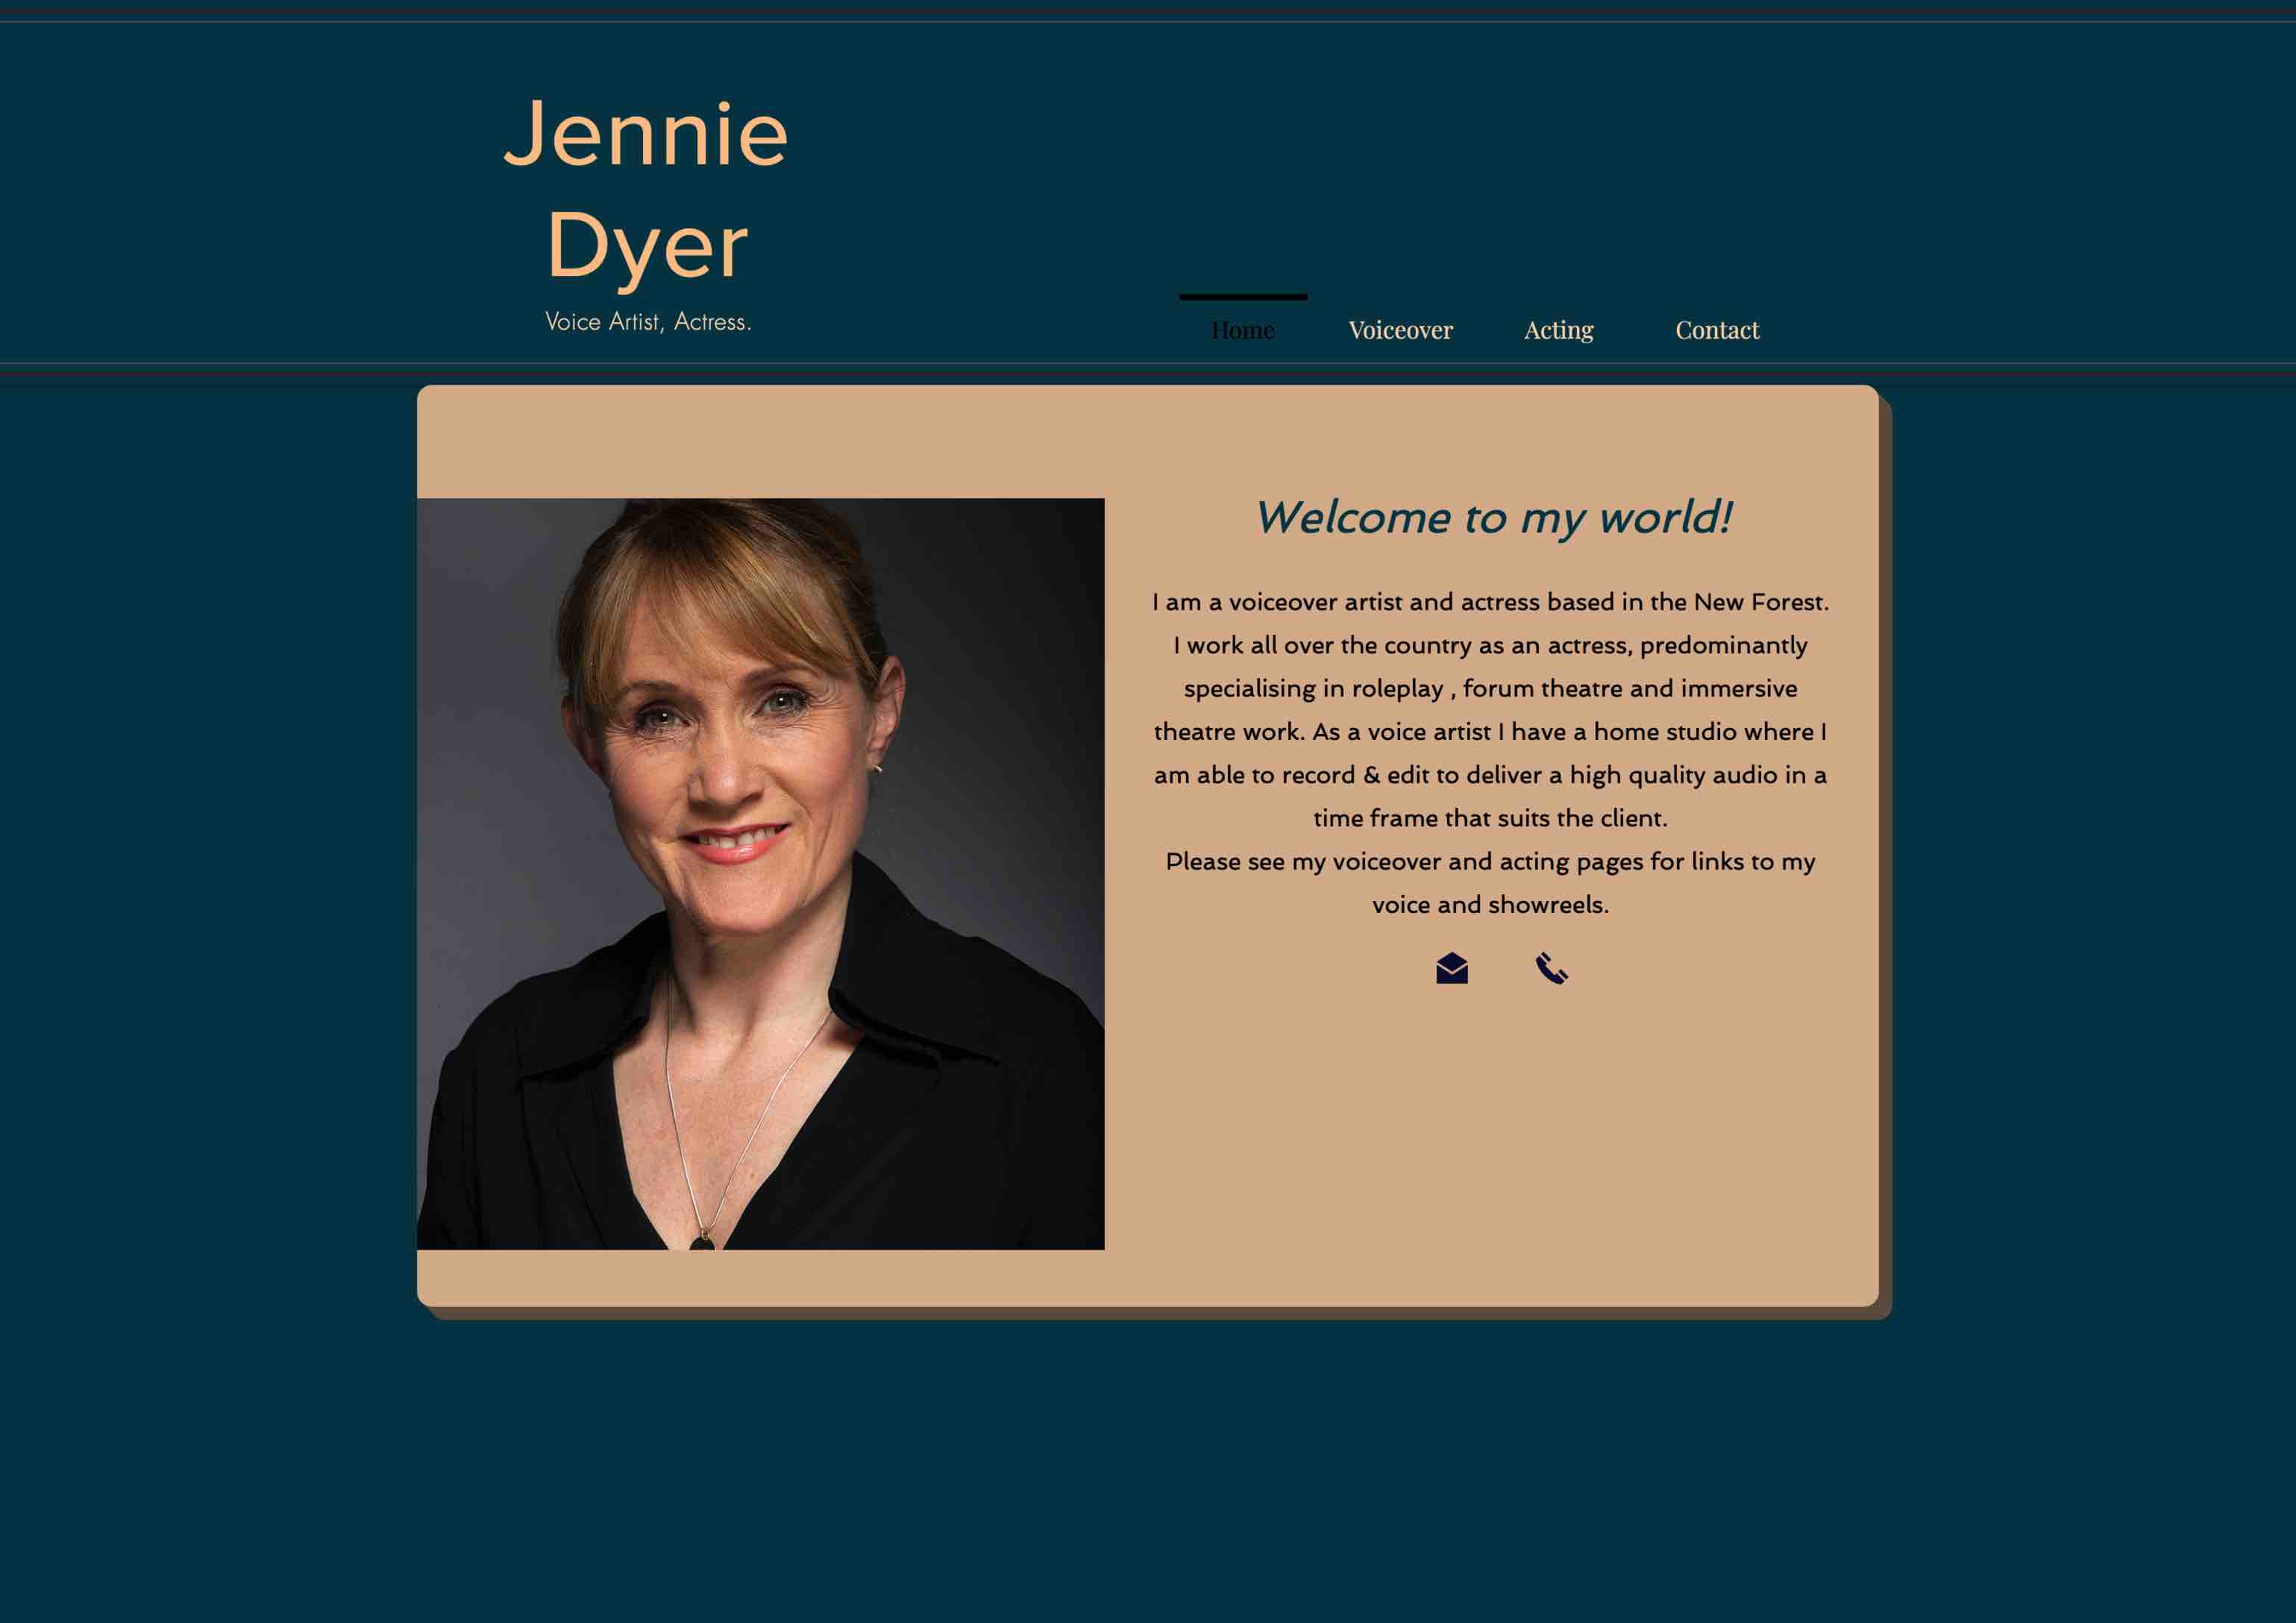 Jennie’s homepage